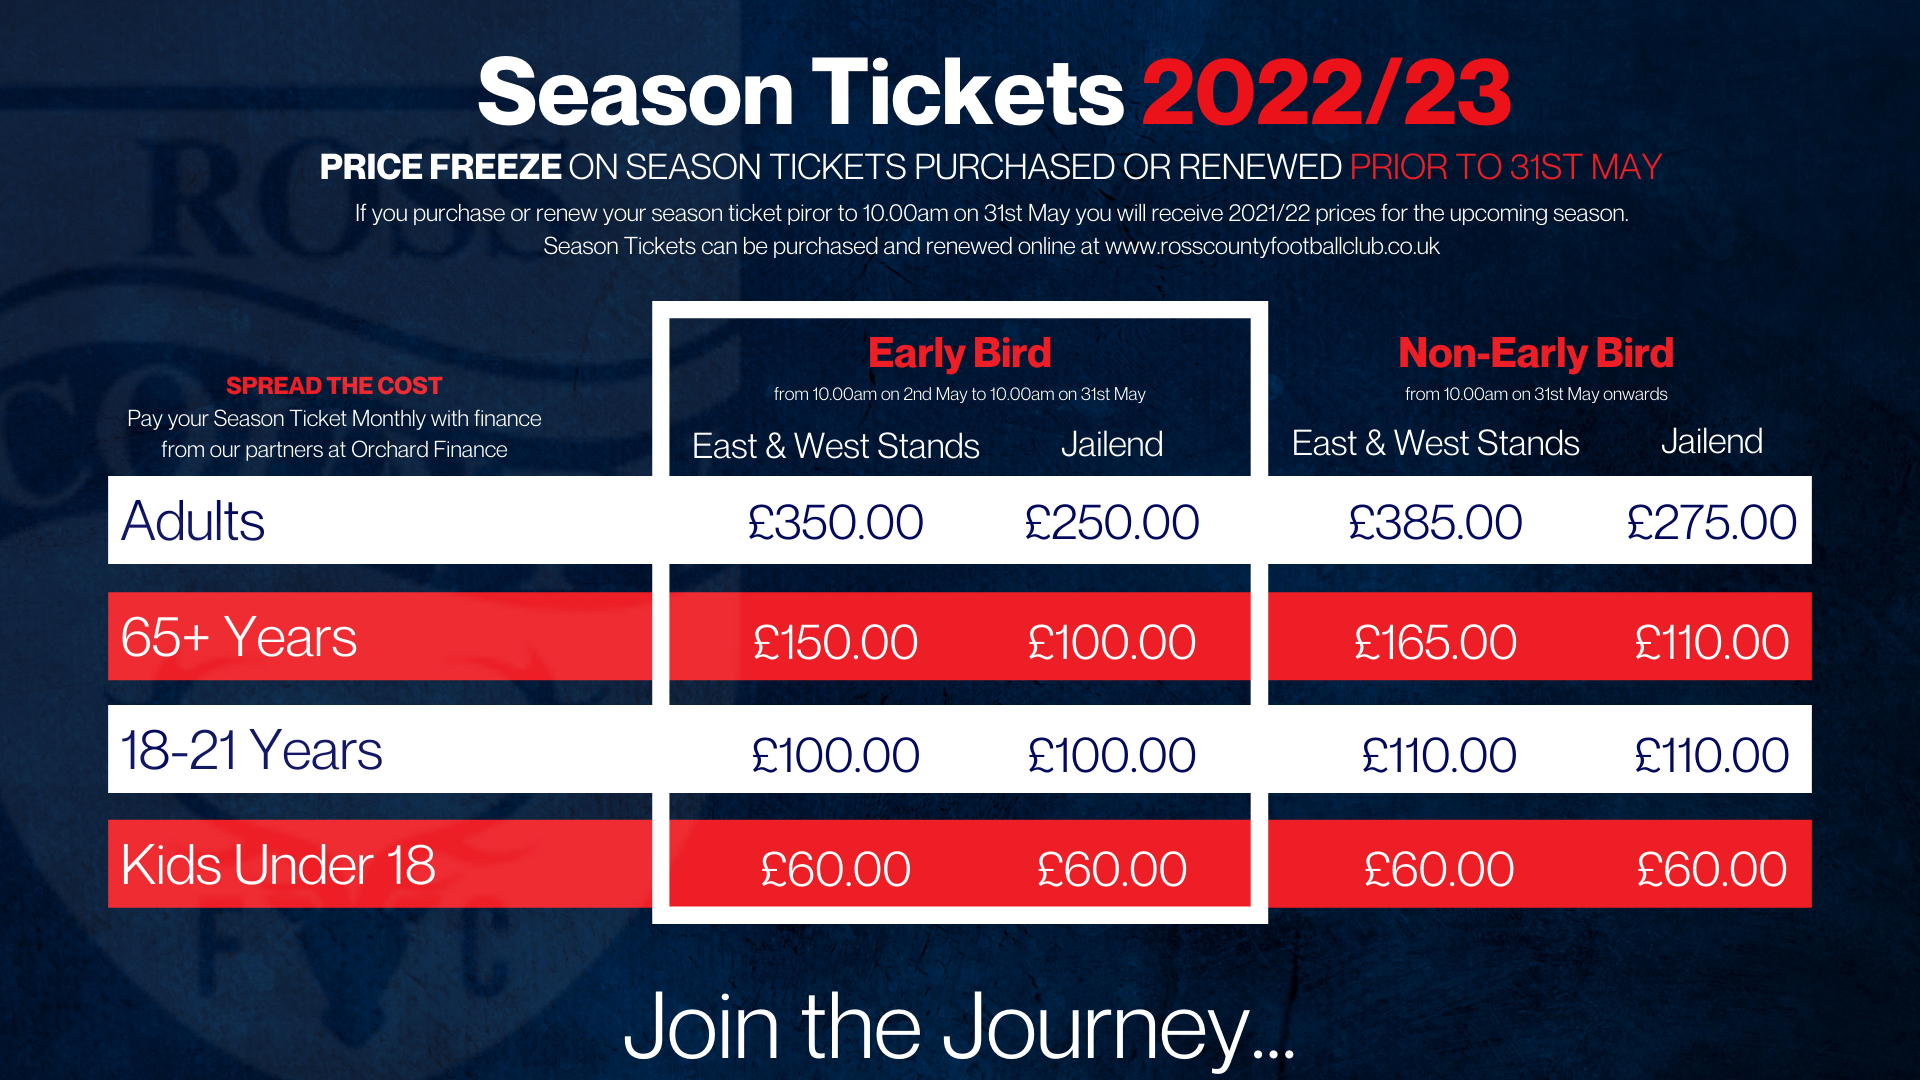 Season Ticket Prices 2022/23